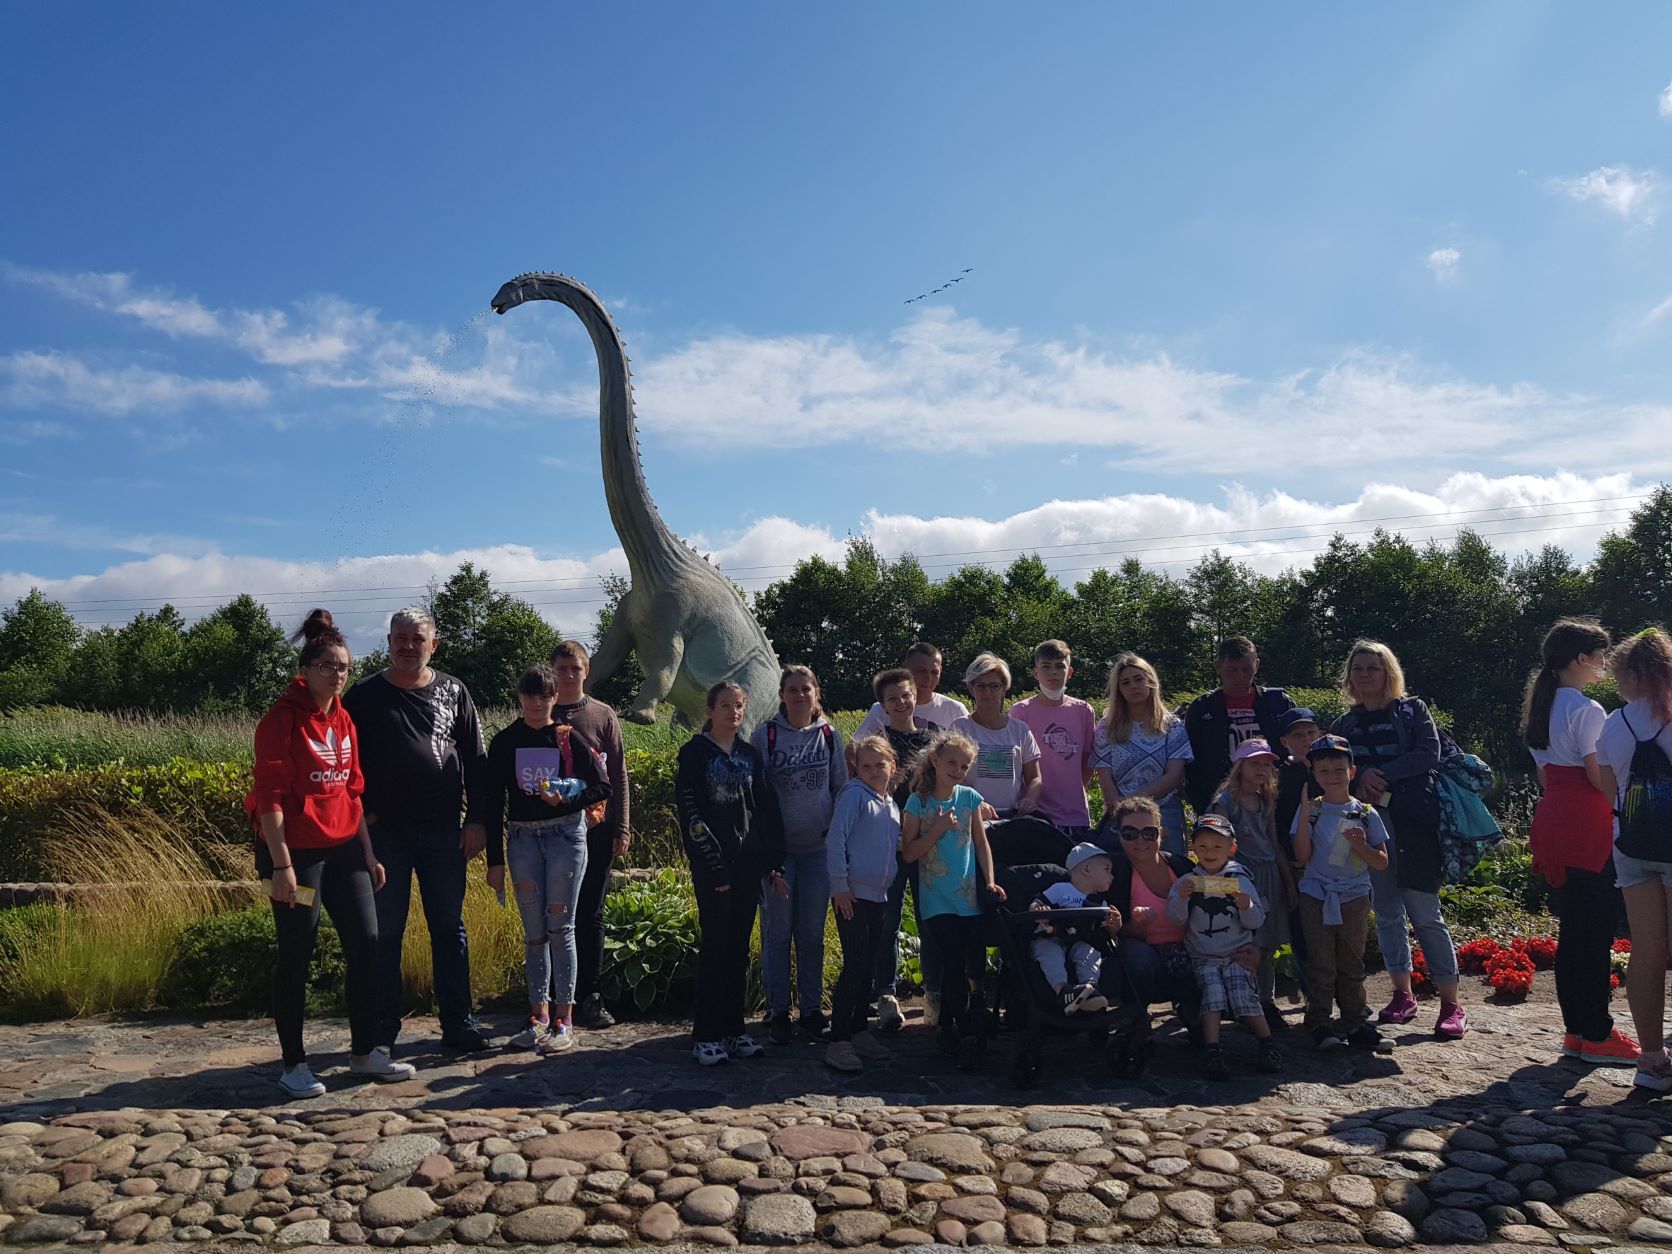 zdjęcie grupowe uczestników wycieczki na tle makiety dużego dinozaura